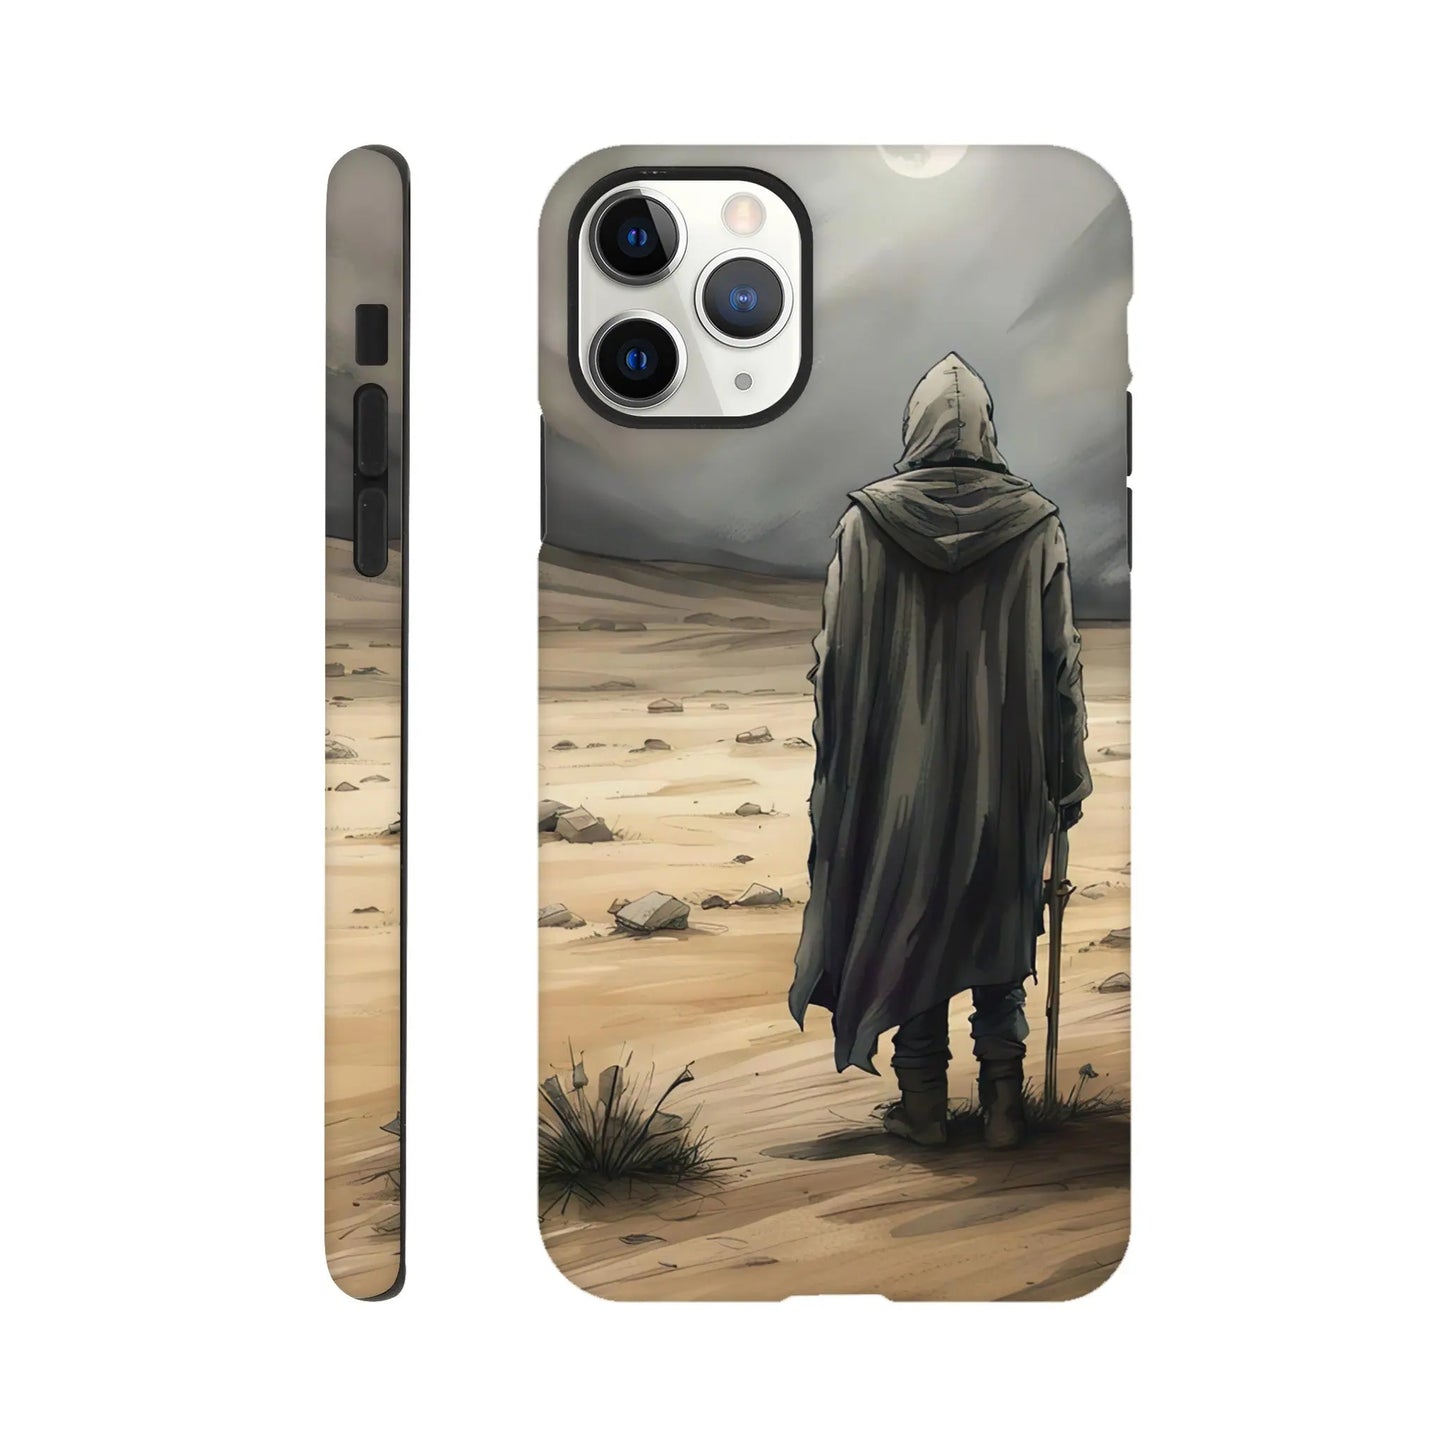 Smartphone-Hülle "Hart" - Wüstenwanderer - Malerischer Stil, KI-Kunst RolConArt, Malerischer Stil - Porträts, iPhone-11-Pro-Max